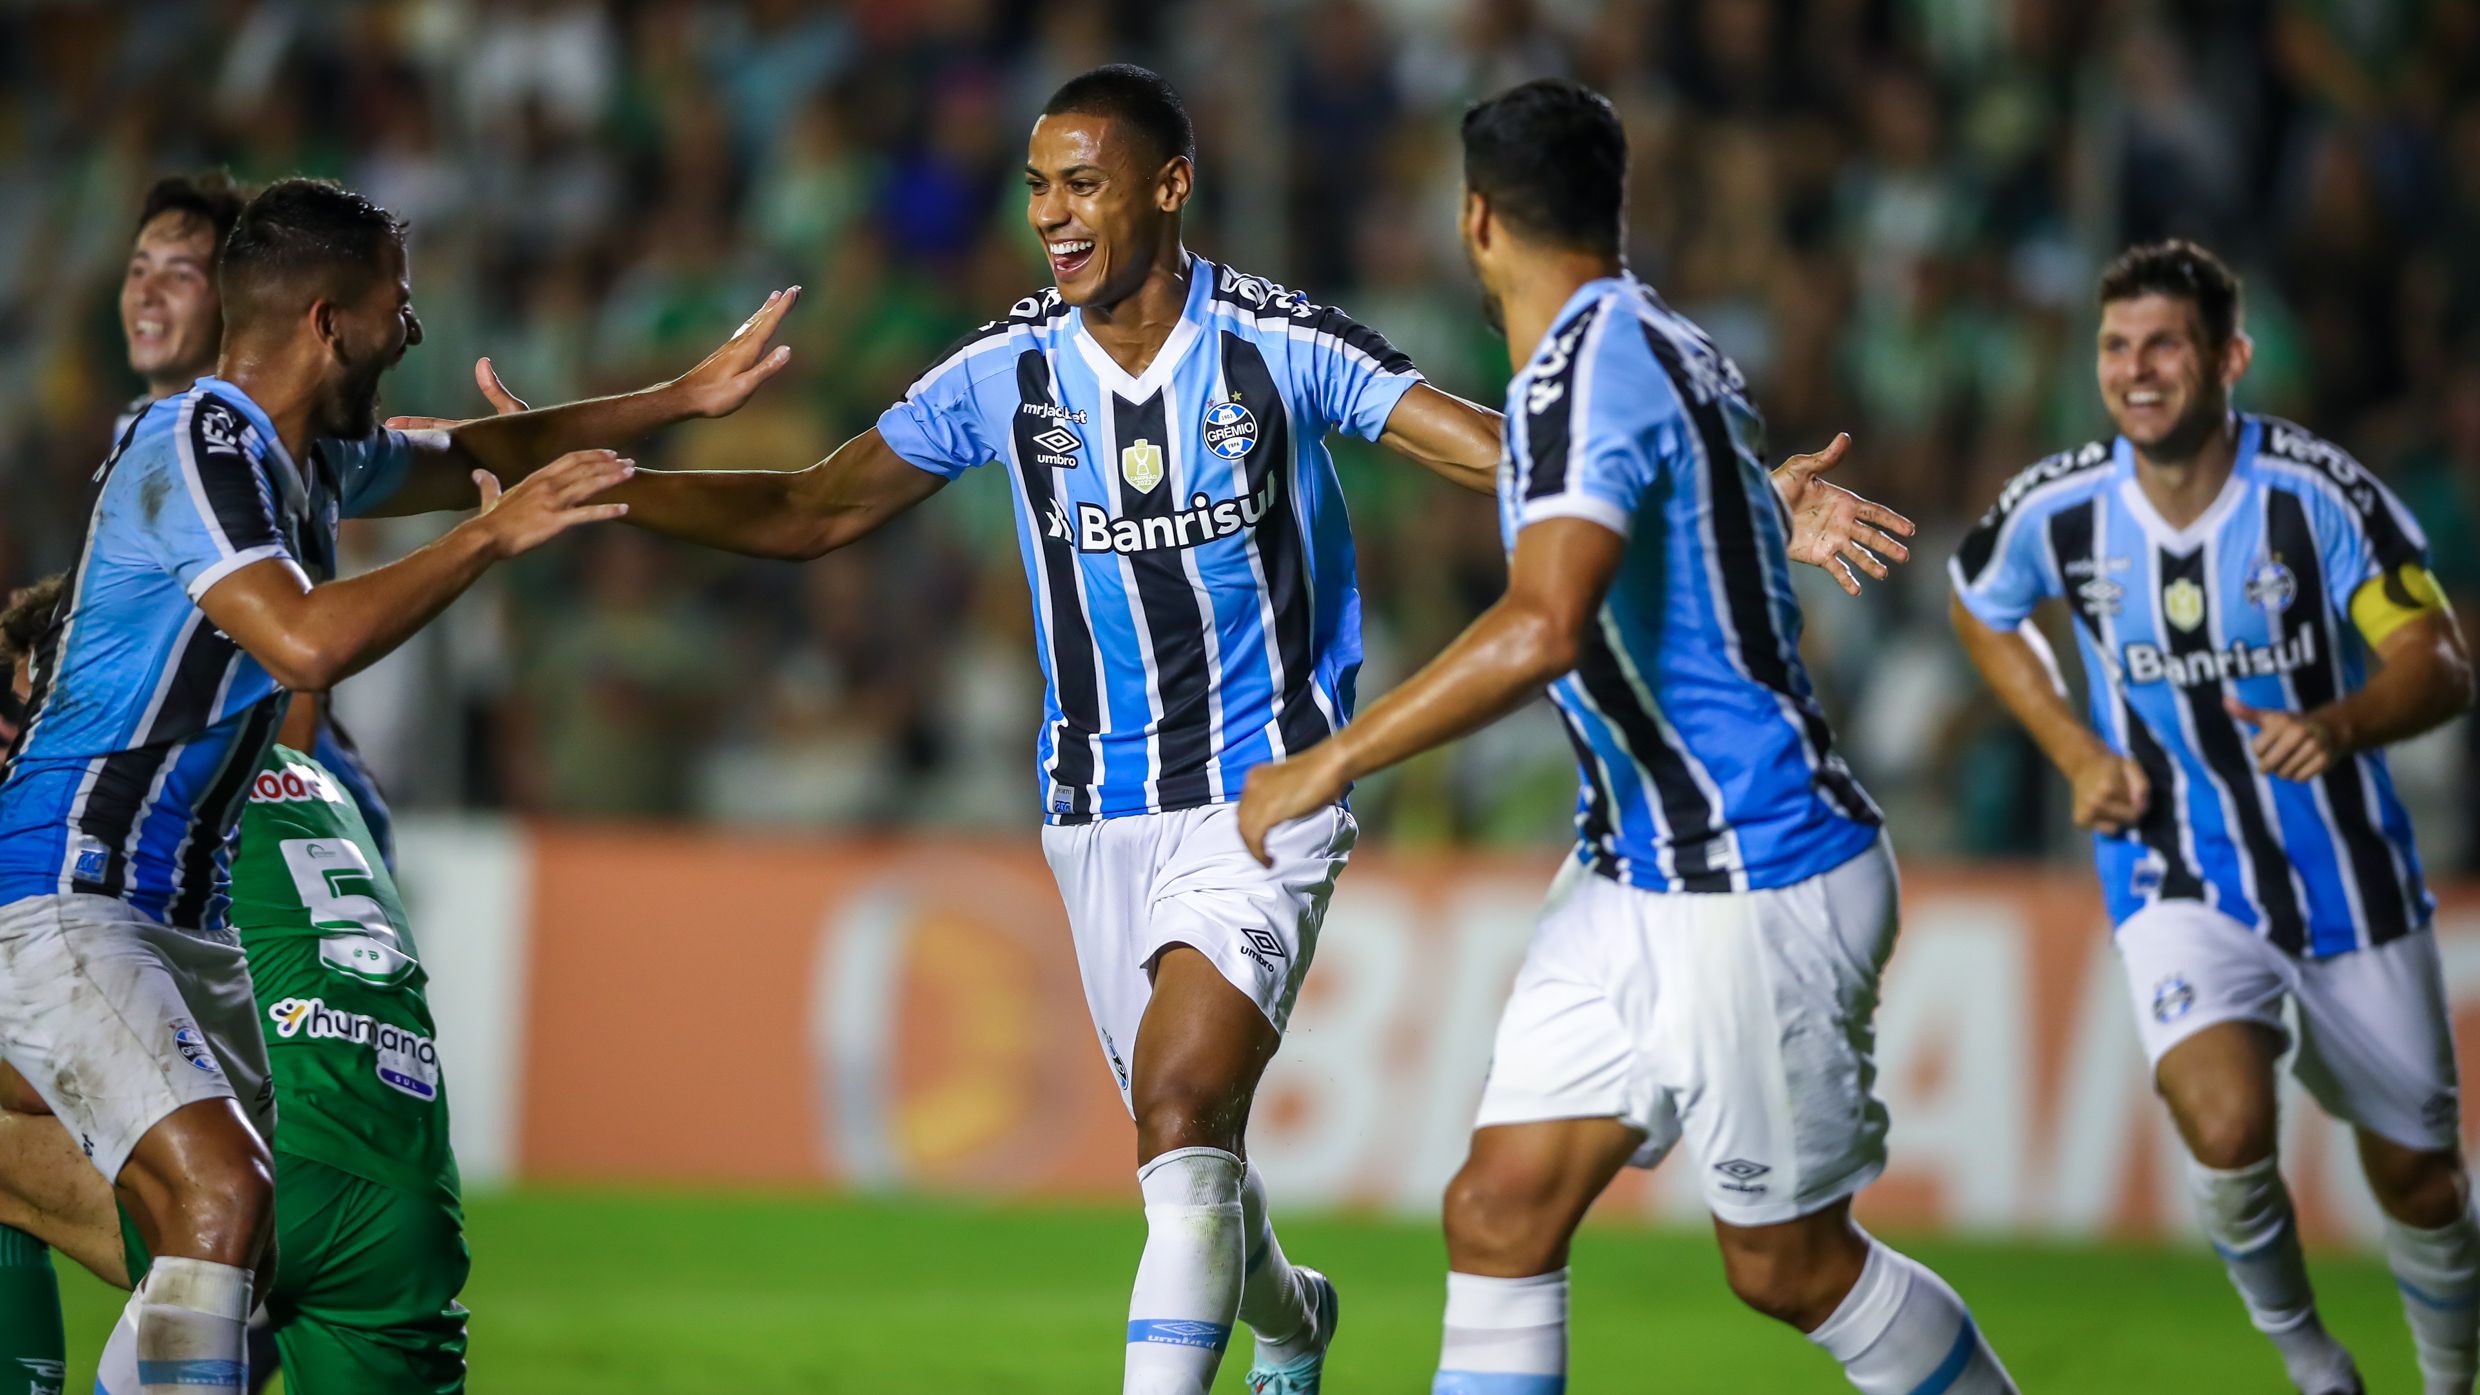 Grêmio vs Ituano: A Clash of Champions